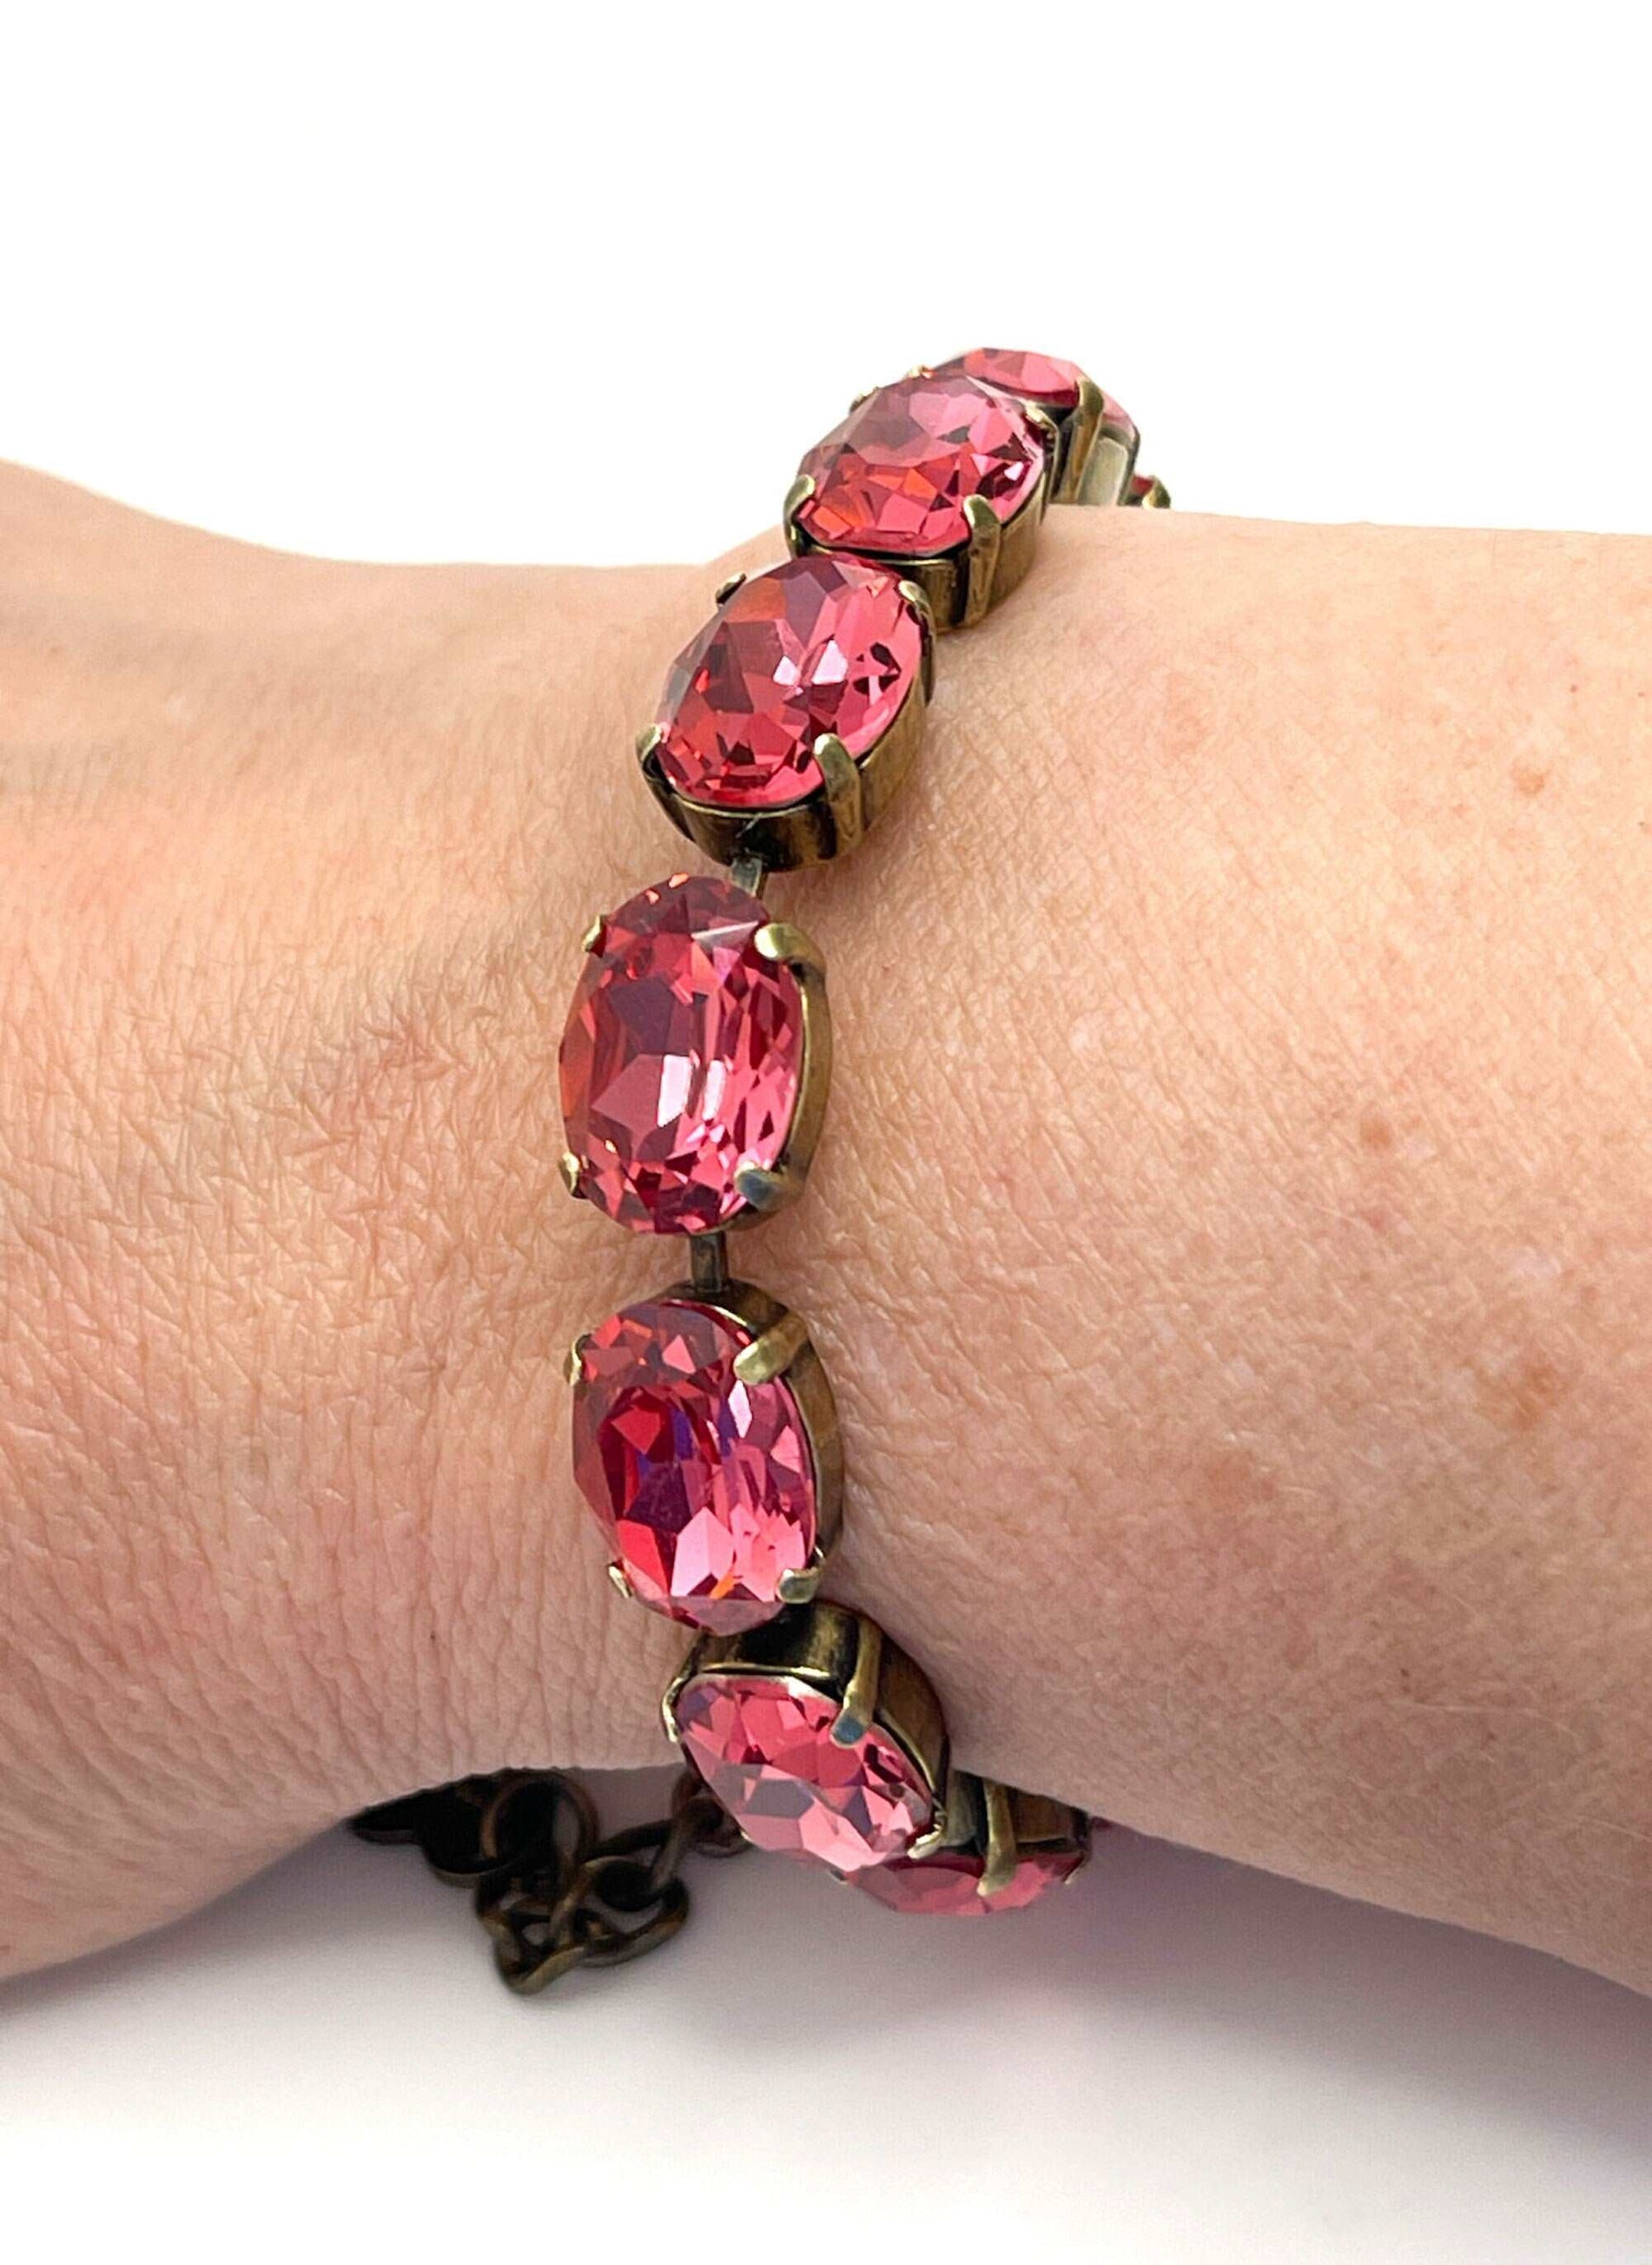 Rose Pink Crystal Bracelet | Antique Brass | Oval Pink Tennis Bracelet | Georgian Bracelet